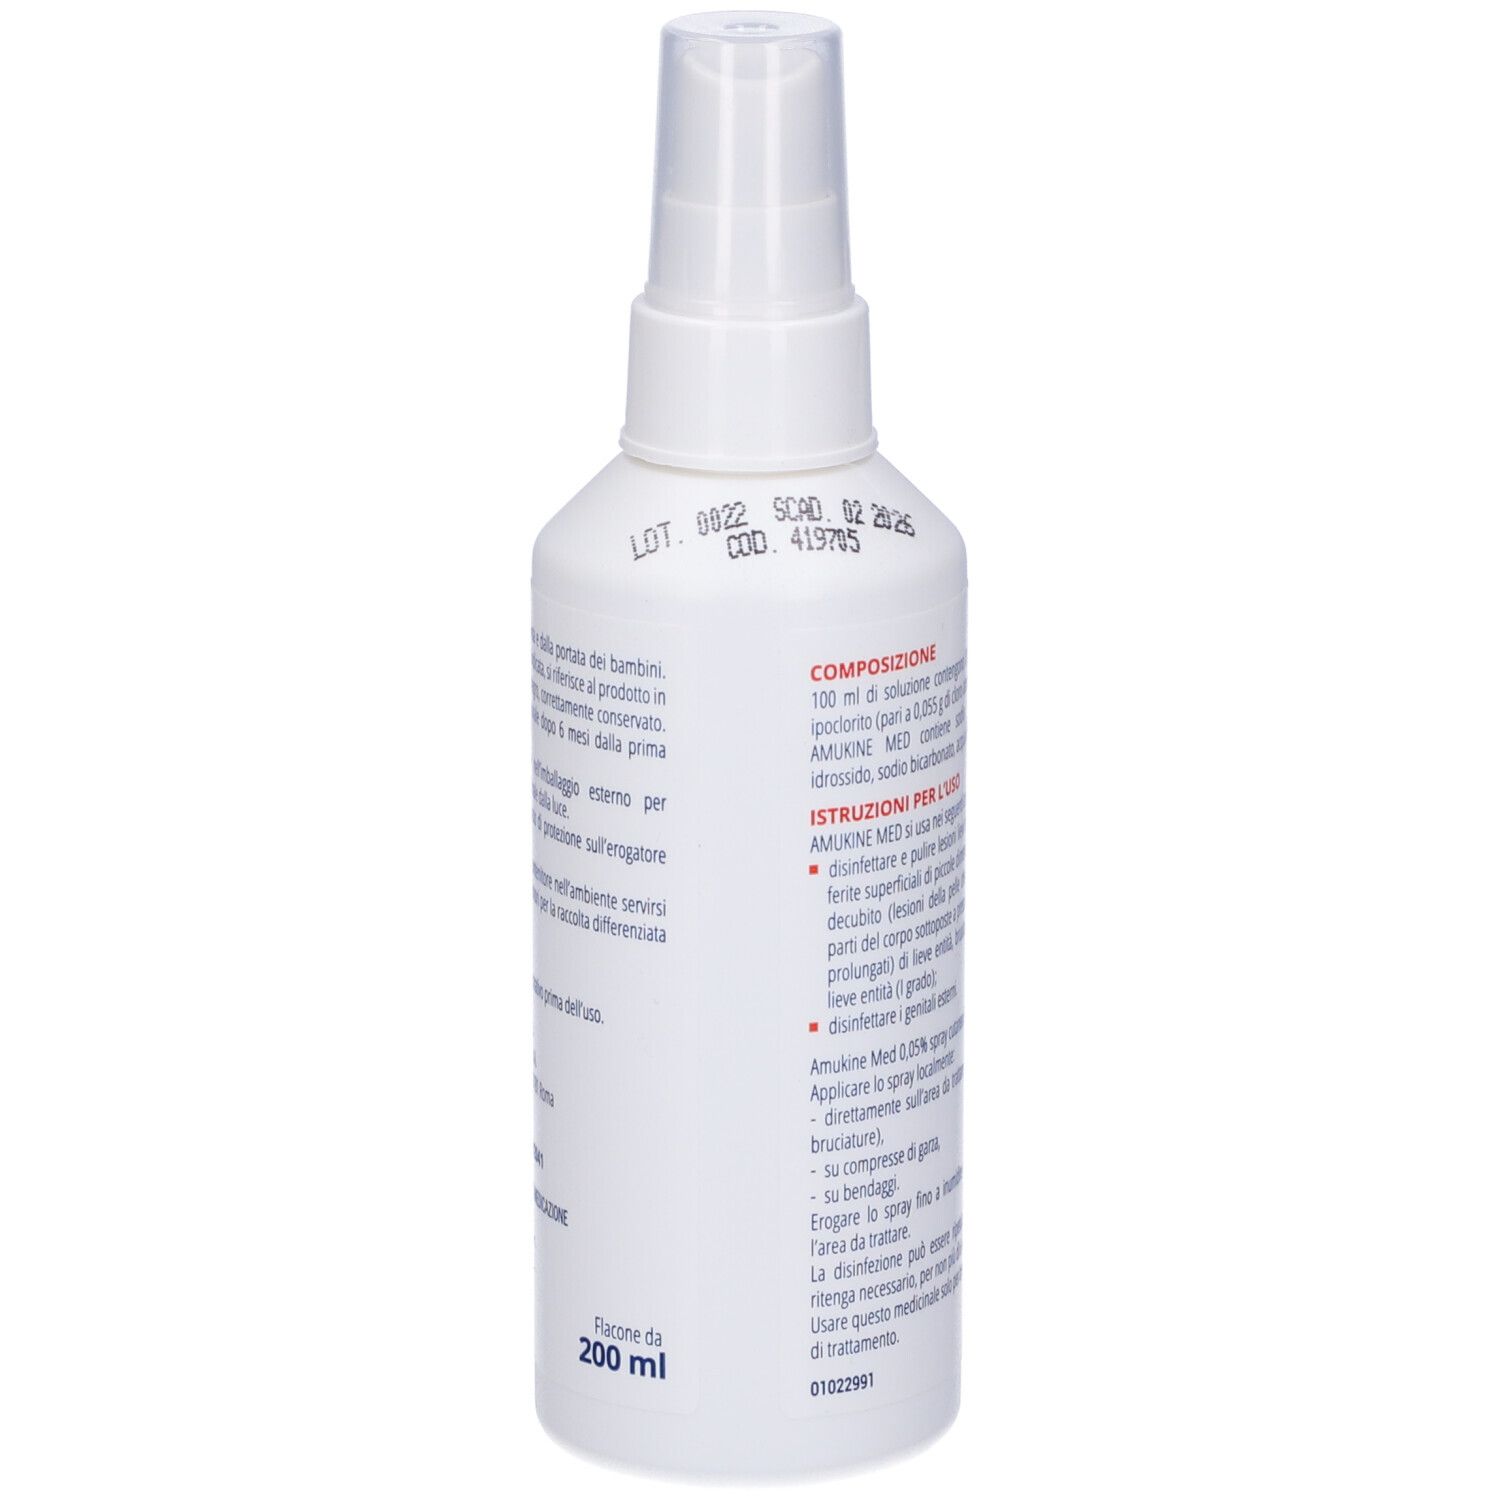 AMUKINE MED 0,05% Spray cutaneo, soluzione